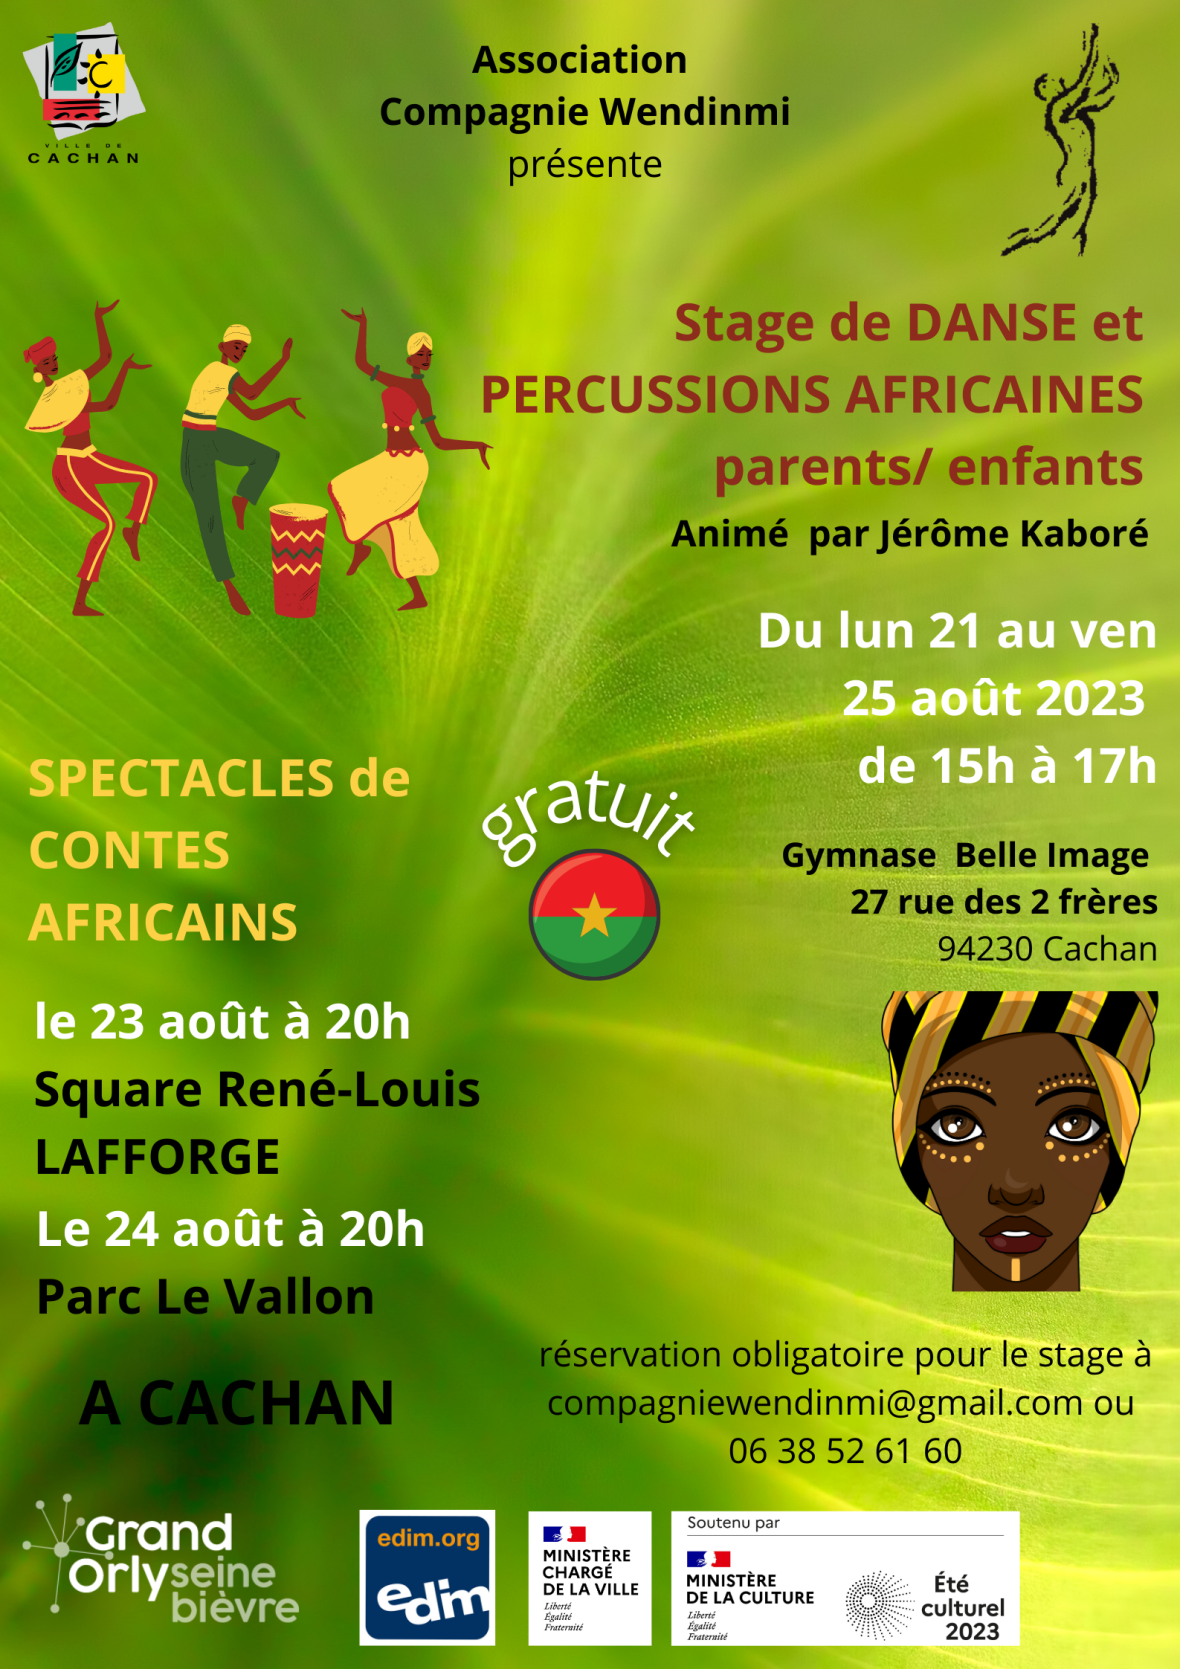 Stage de danse et percussions africaines parents/enfants